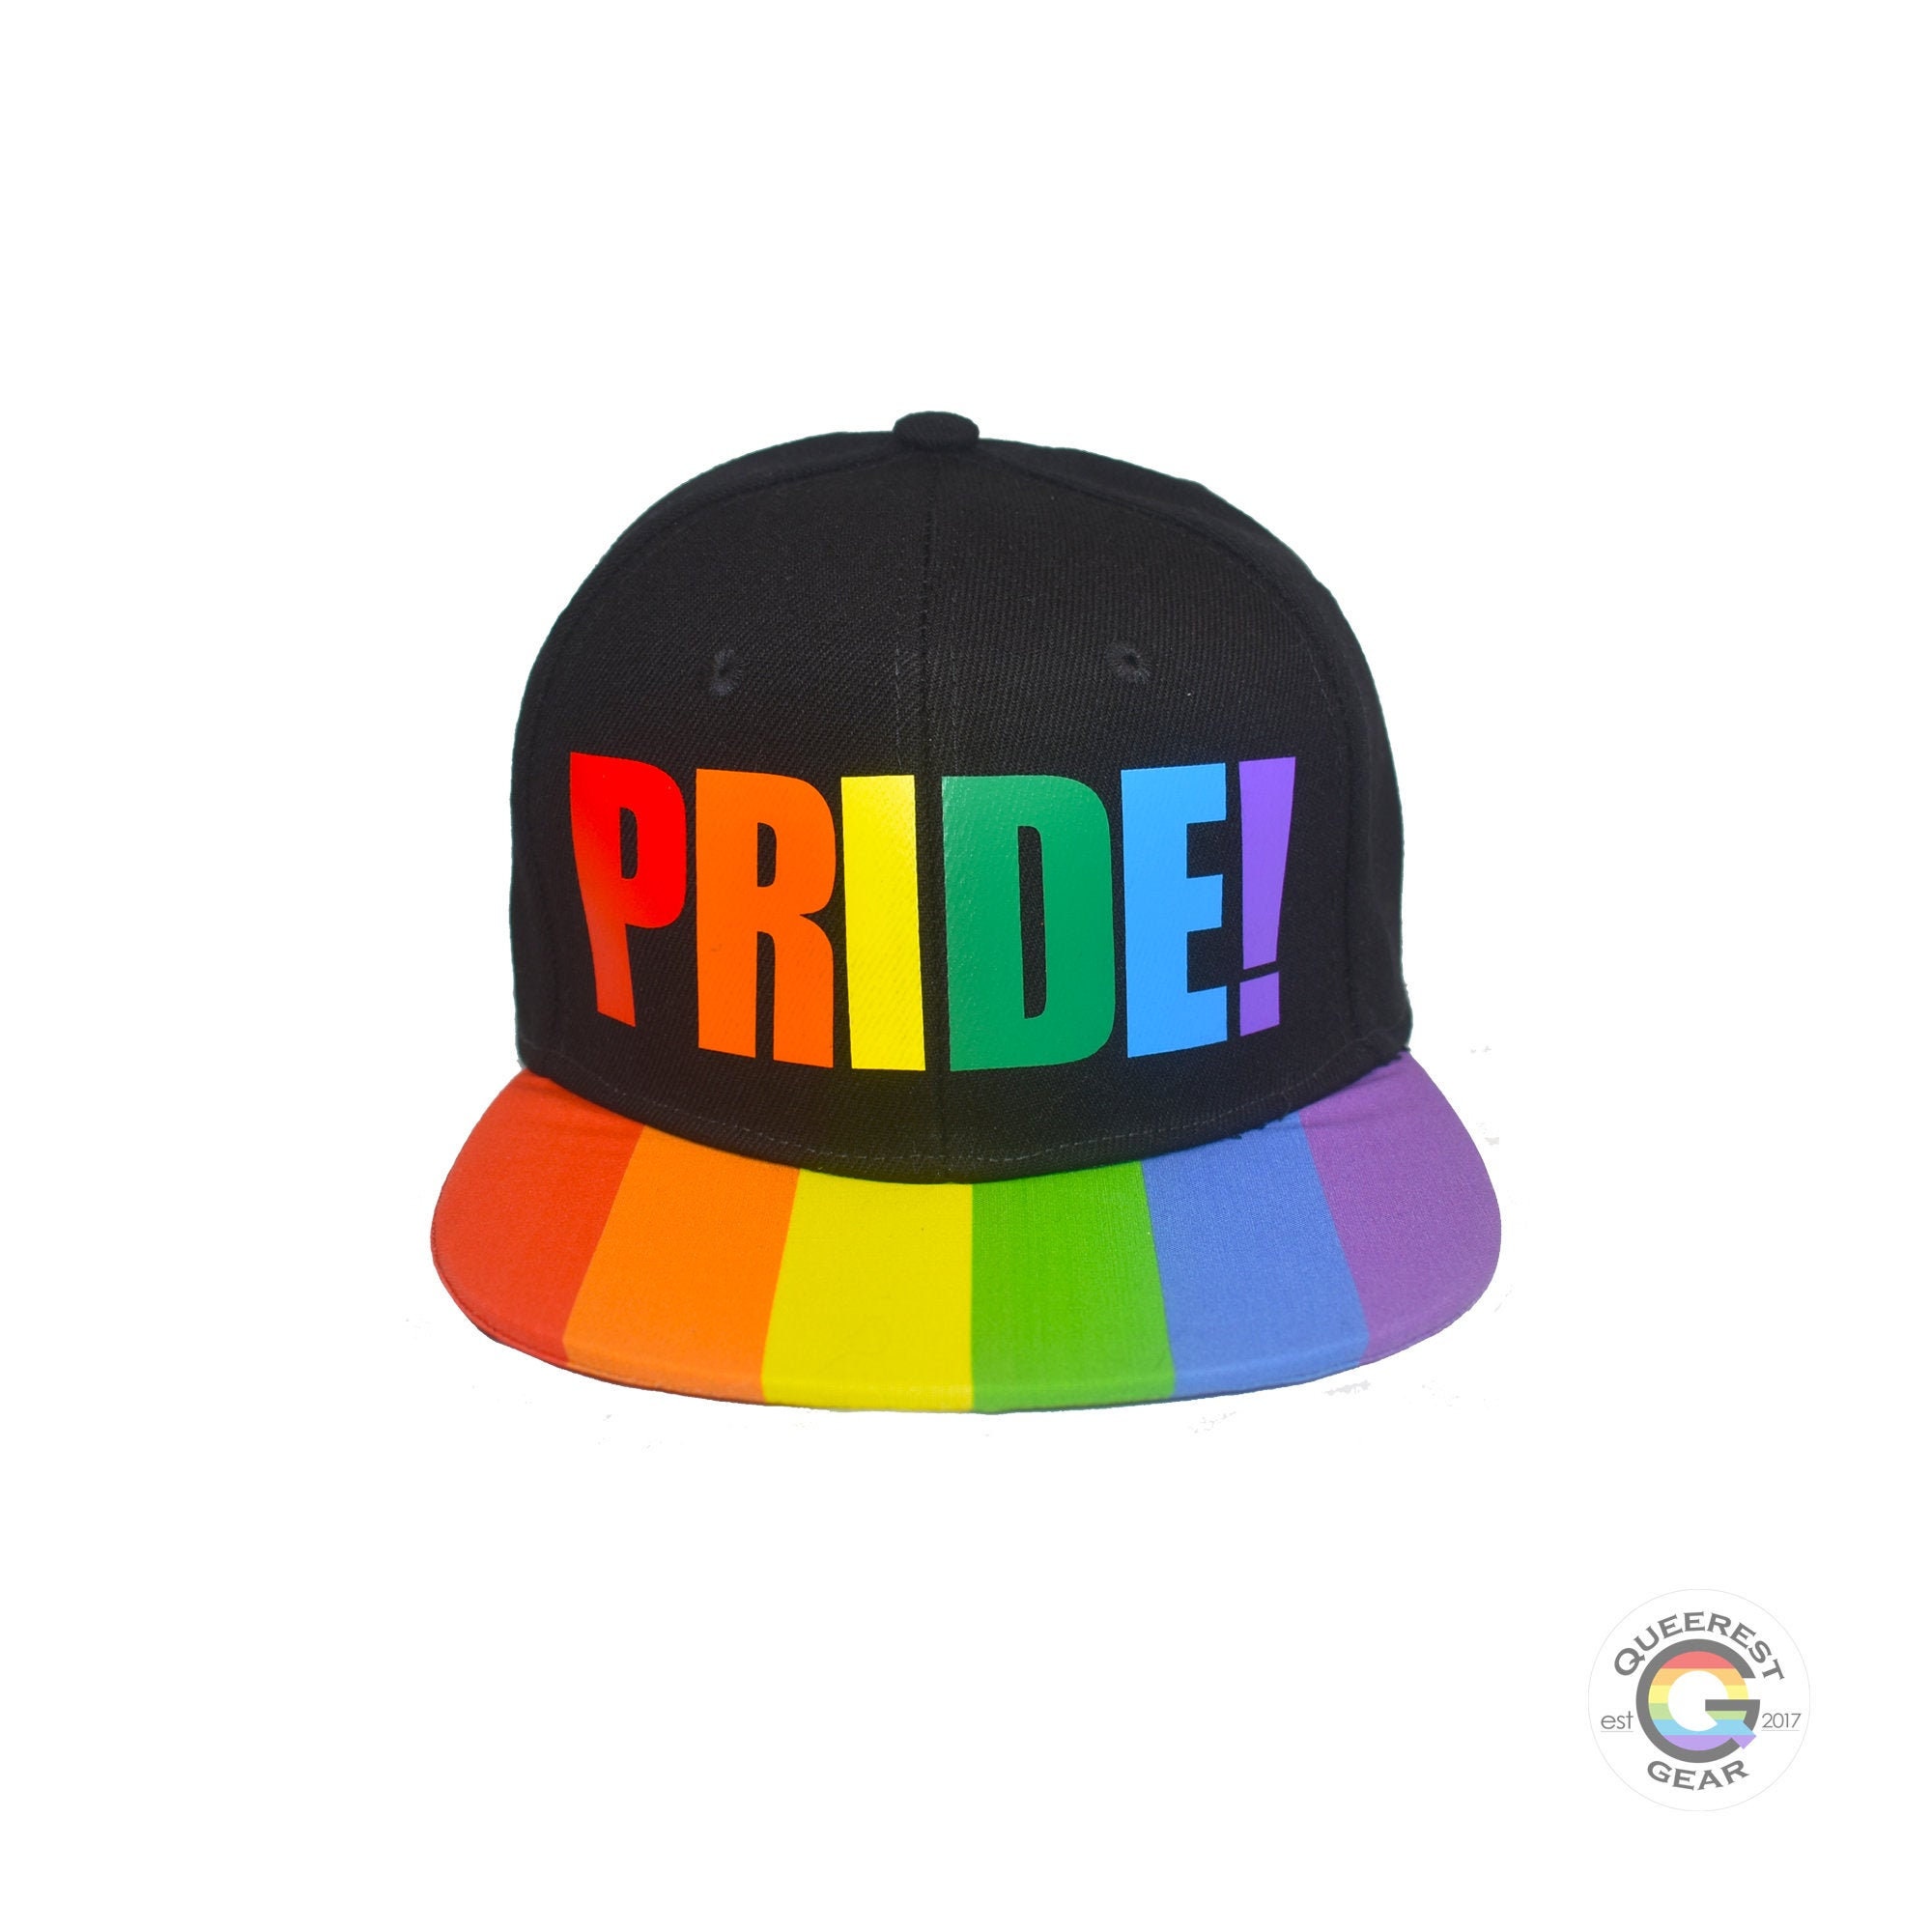 Multicolored hat